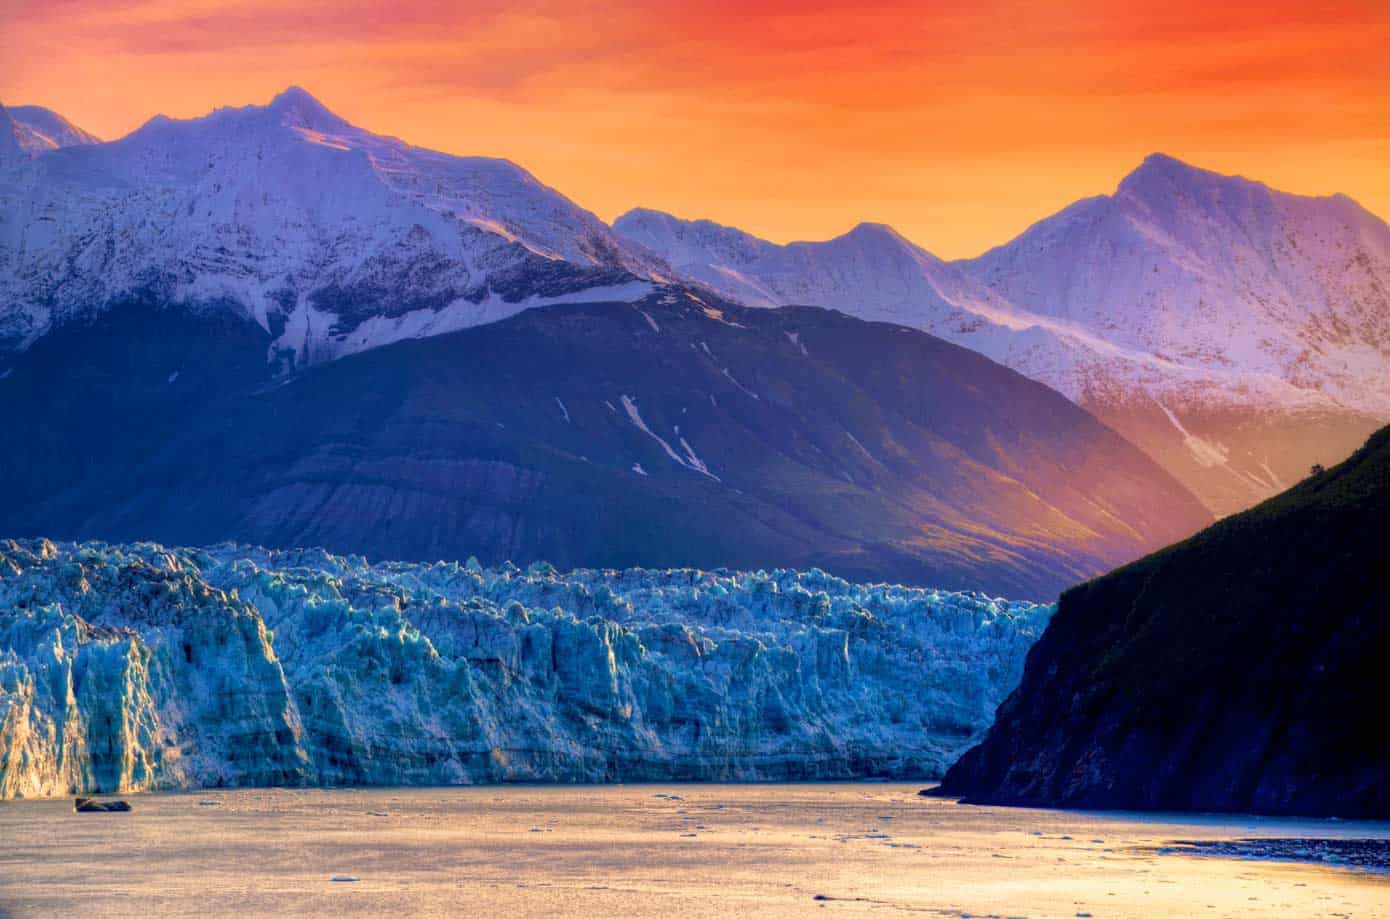 Sunrise over Hubbard Glacier Bay during an Alaskan cruise.